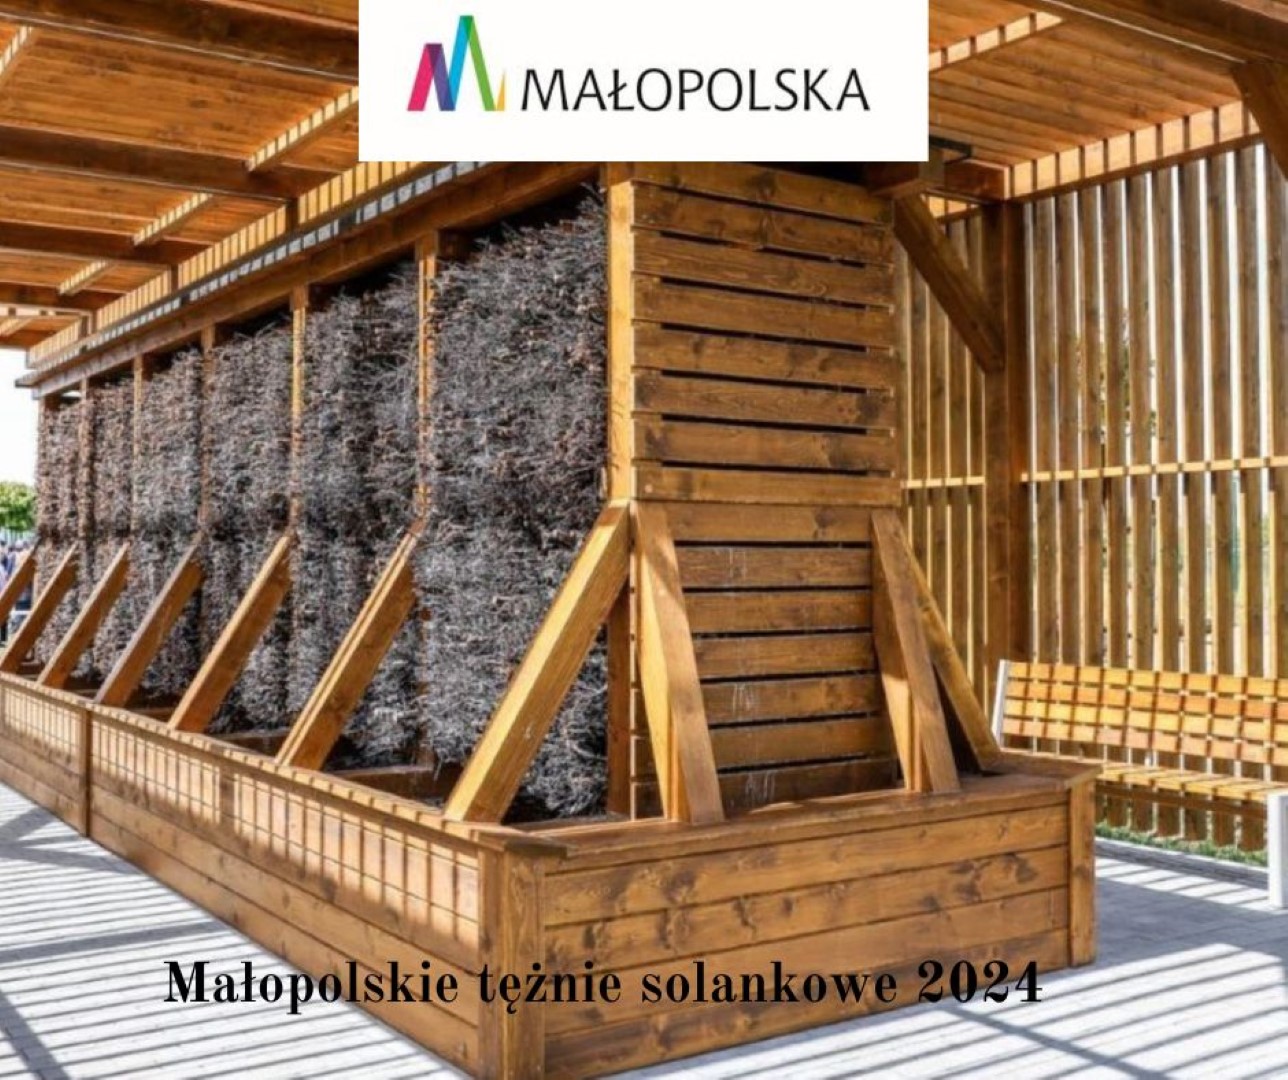 Gmina Czorsztyn otrzymała środki finansowe na budowę tężni solankowej w Maniowach